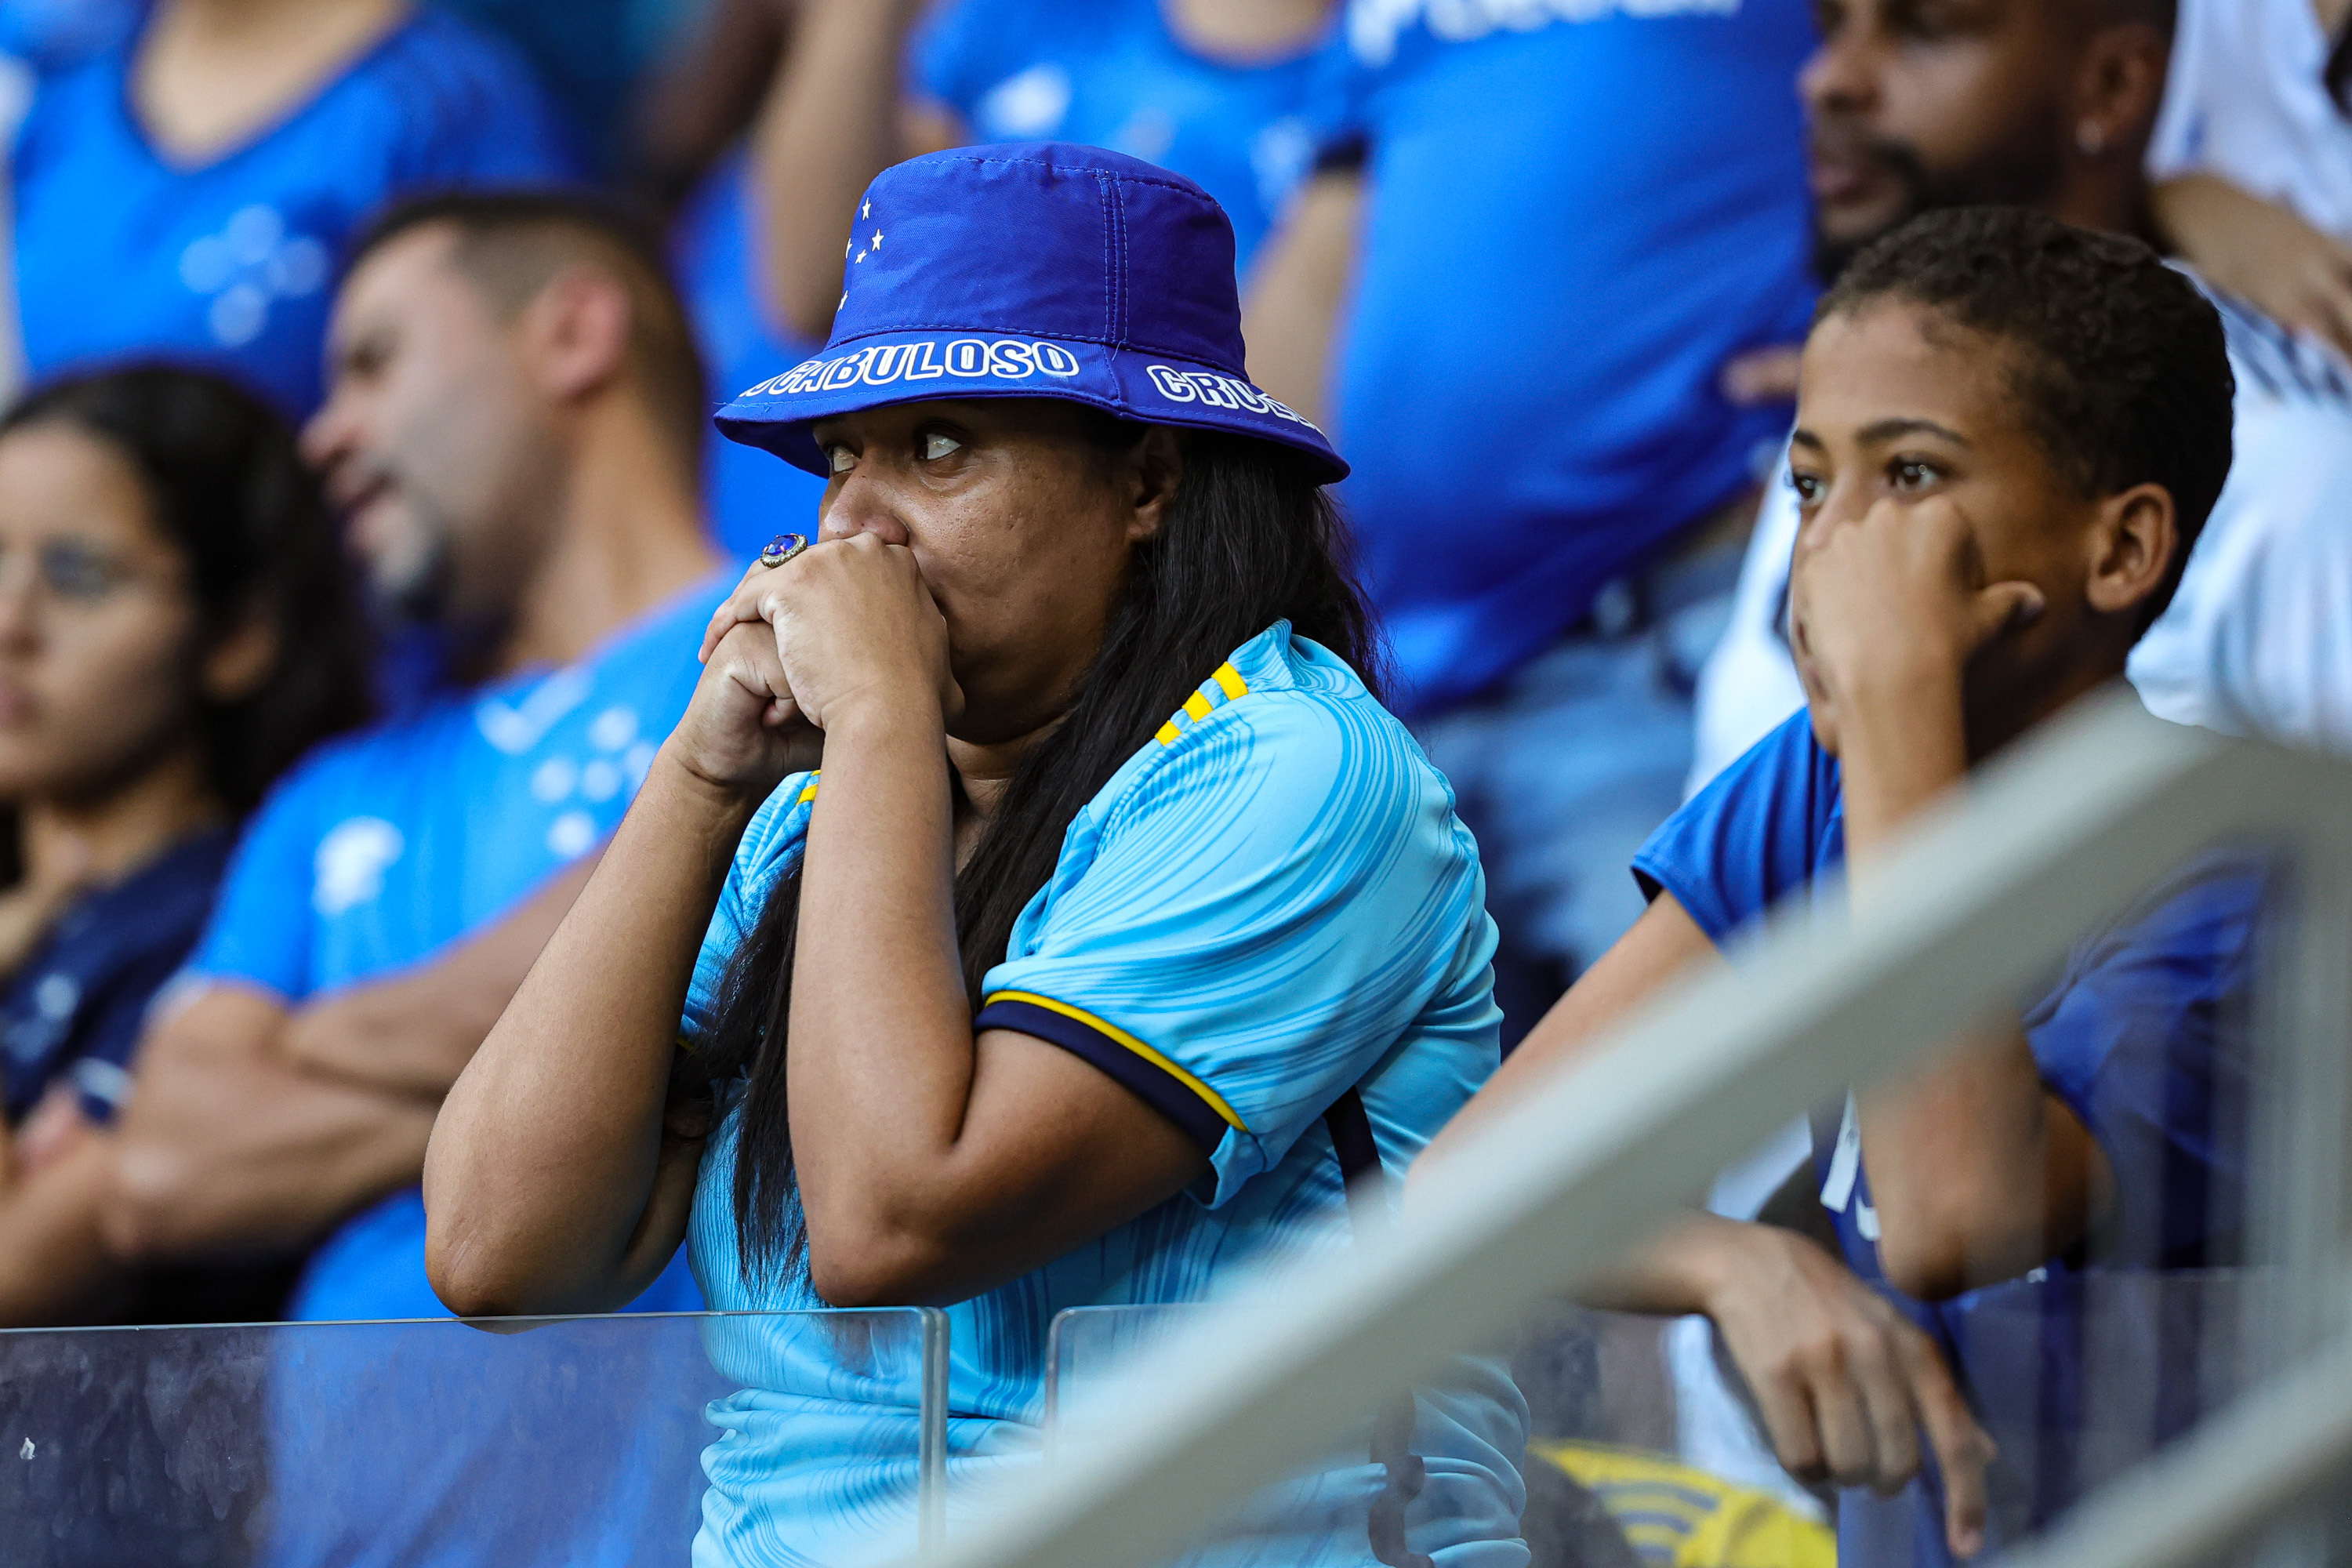 Internacional respira na luta contra o rebaixamento no Brasileirão e afunda  o Cruzeiro - Jogada - Diário do Nordeste